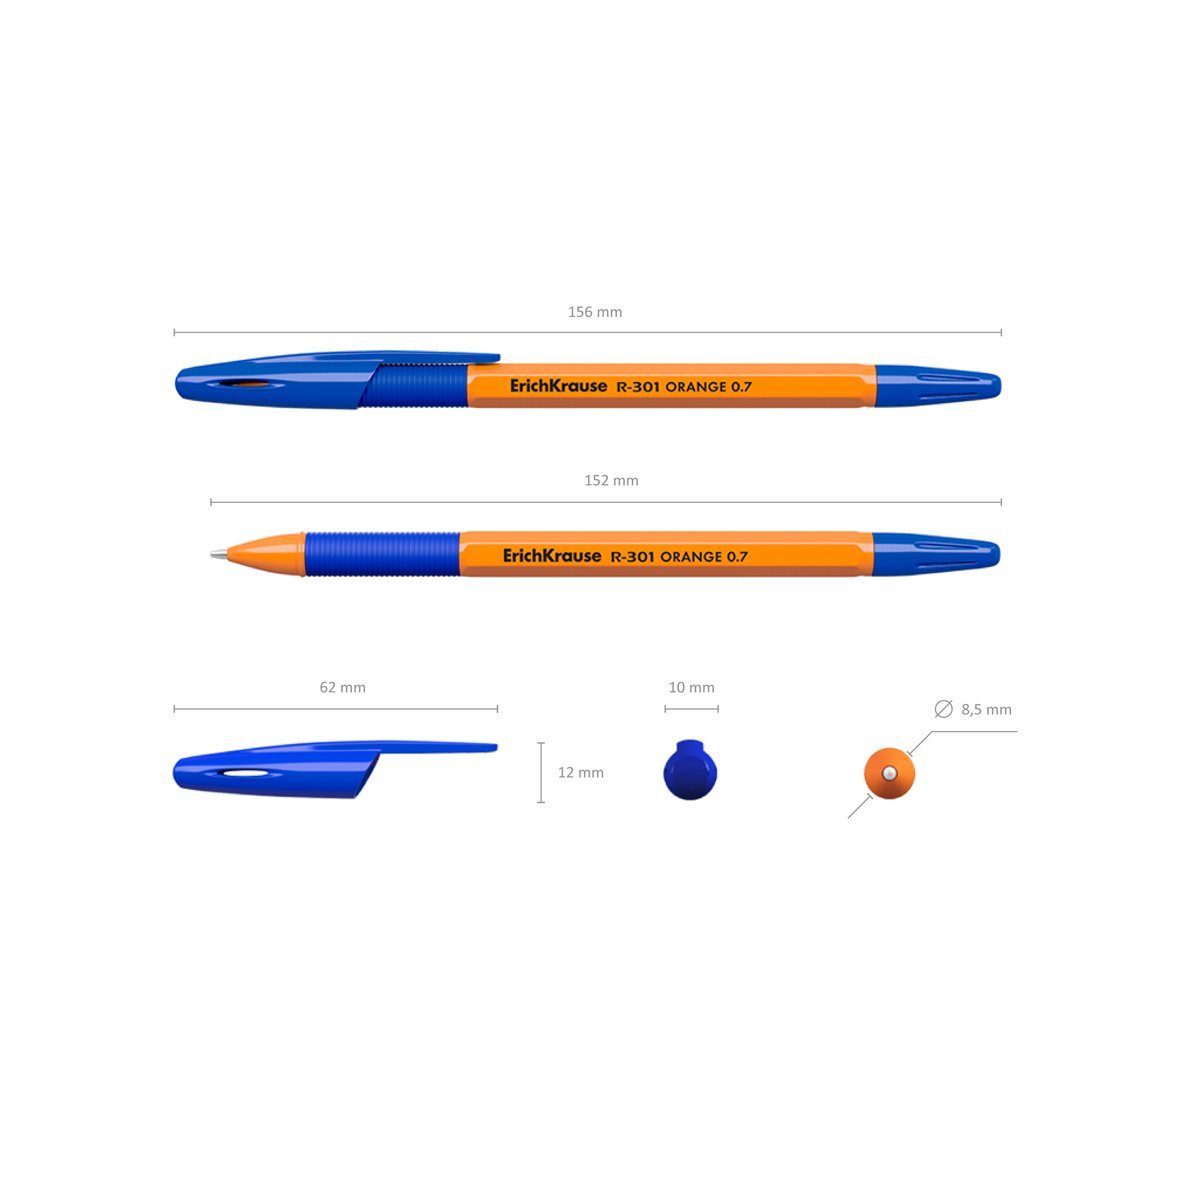 Tinte Gummigriff Orange Erich 0.7 Kugelschreiber Blau 50er R-301 Krause Pack Stick Kugelschreiber,